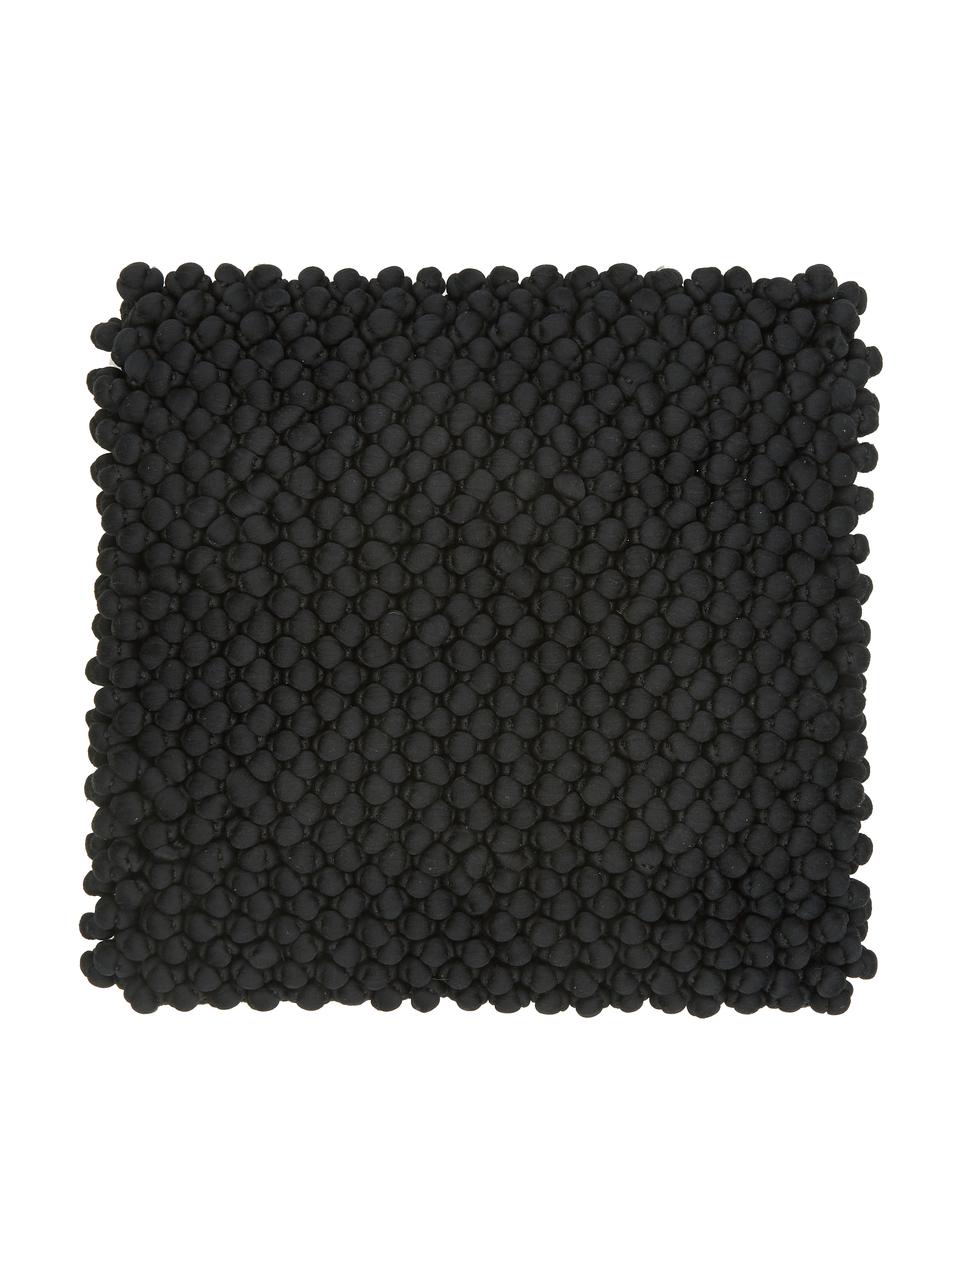 Kussenhoes Iona in zwart, Zwart, 45 x 45 cm